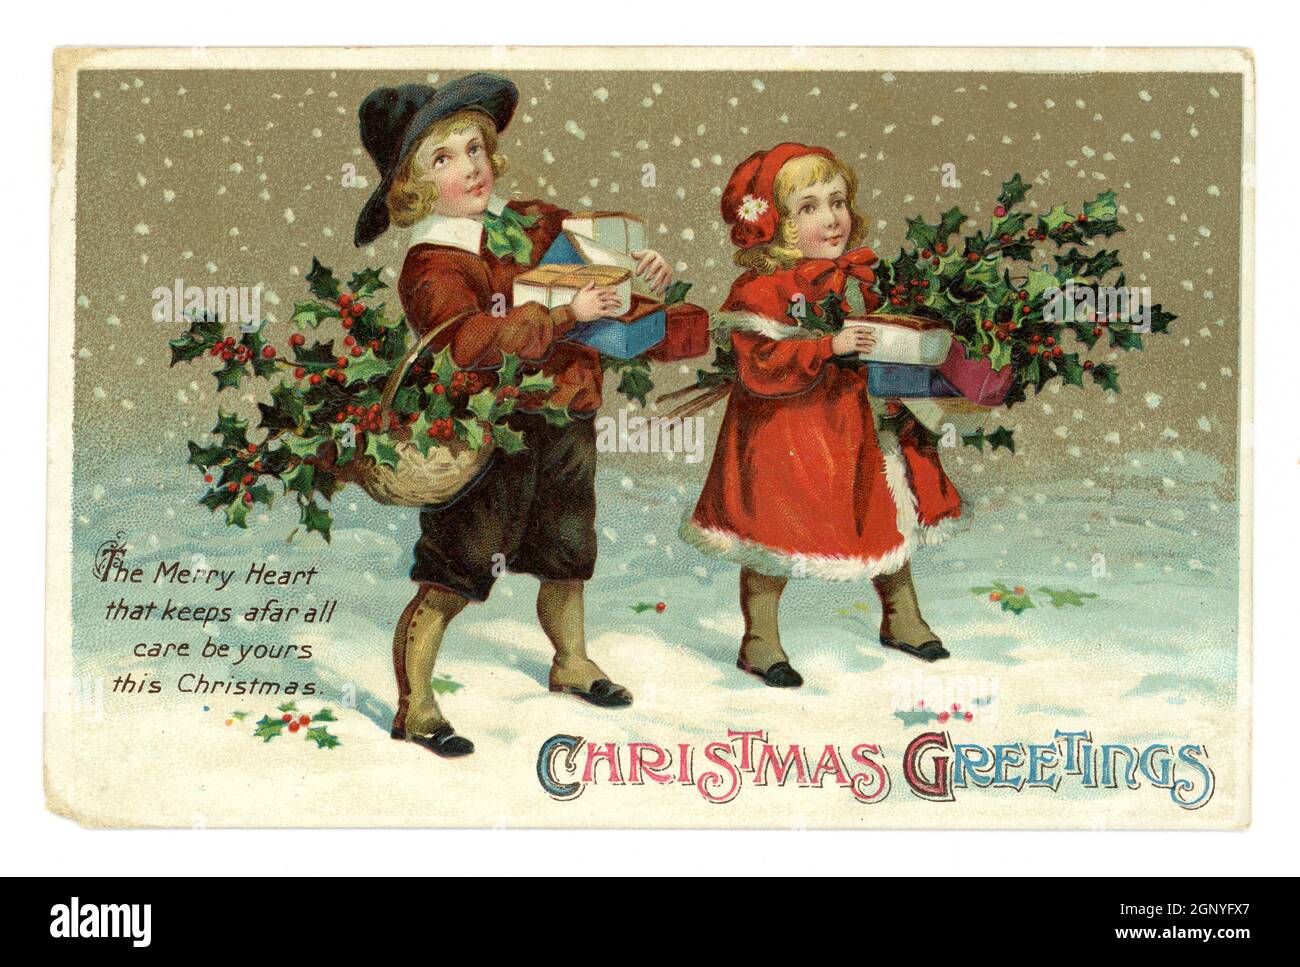 Original geprägte Weihnachts-Grußkarte aus edwardianischer Zeit von niedlichen kleinen Kindern, die Winterkleidung tragen, Geschenke tragen und eine stachelige, verschneite Szene tragen, herausgegeben von International Art Publishing Co. Ltd. Gedruckt in Deutschland um 1910 Stockfoto